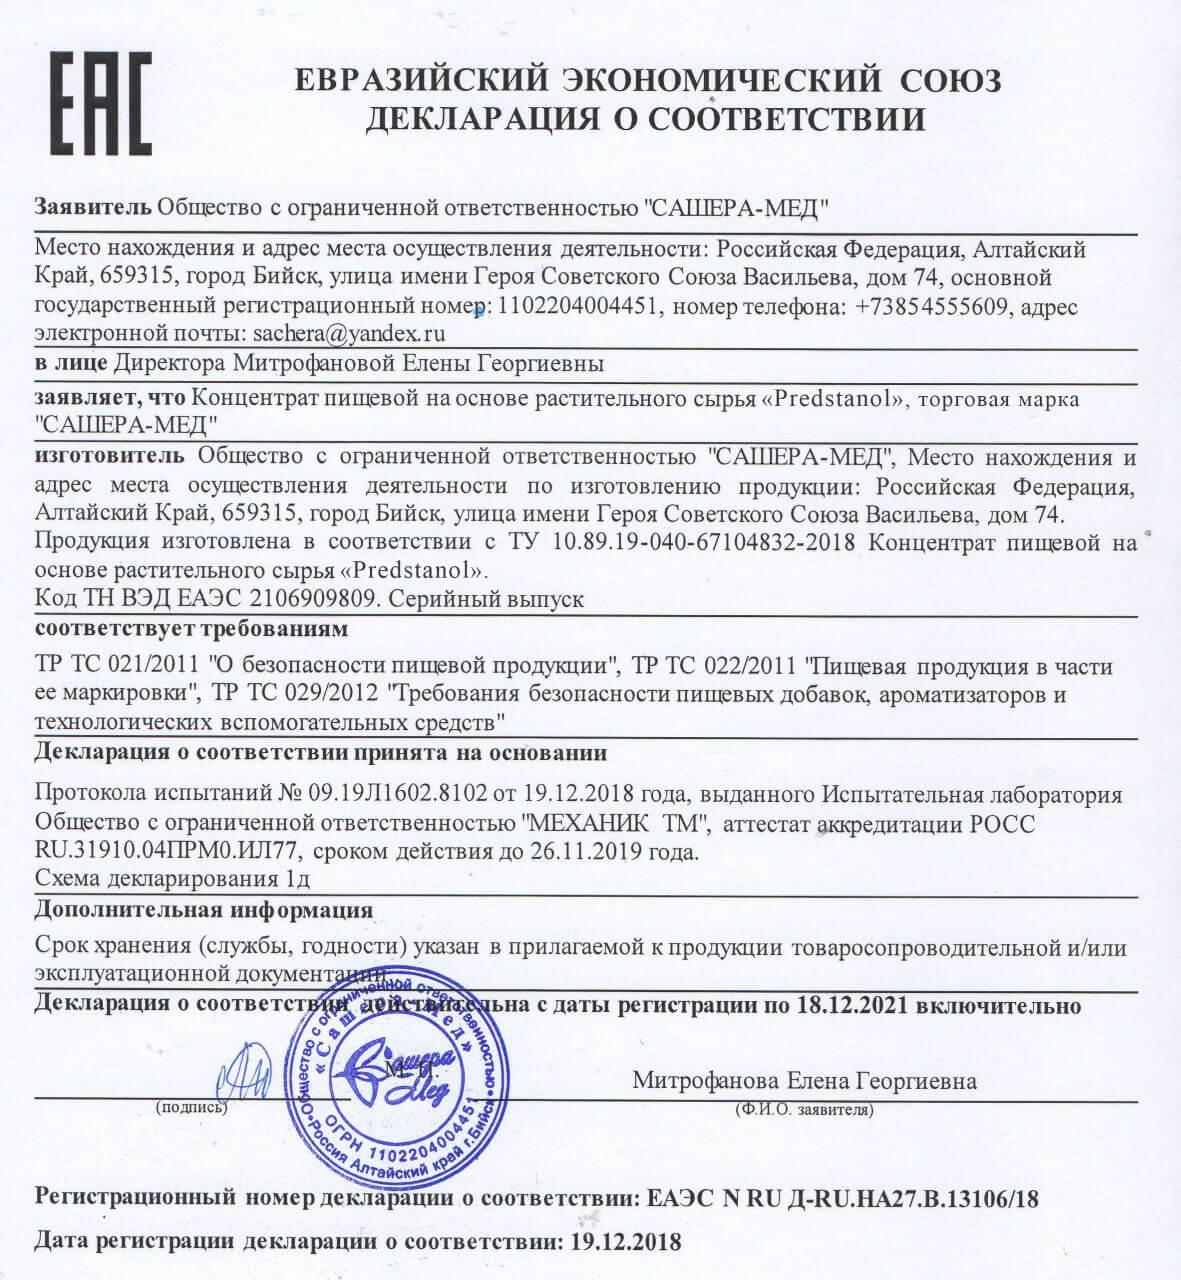 Сертификат на предстанол в Перми